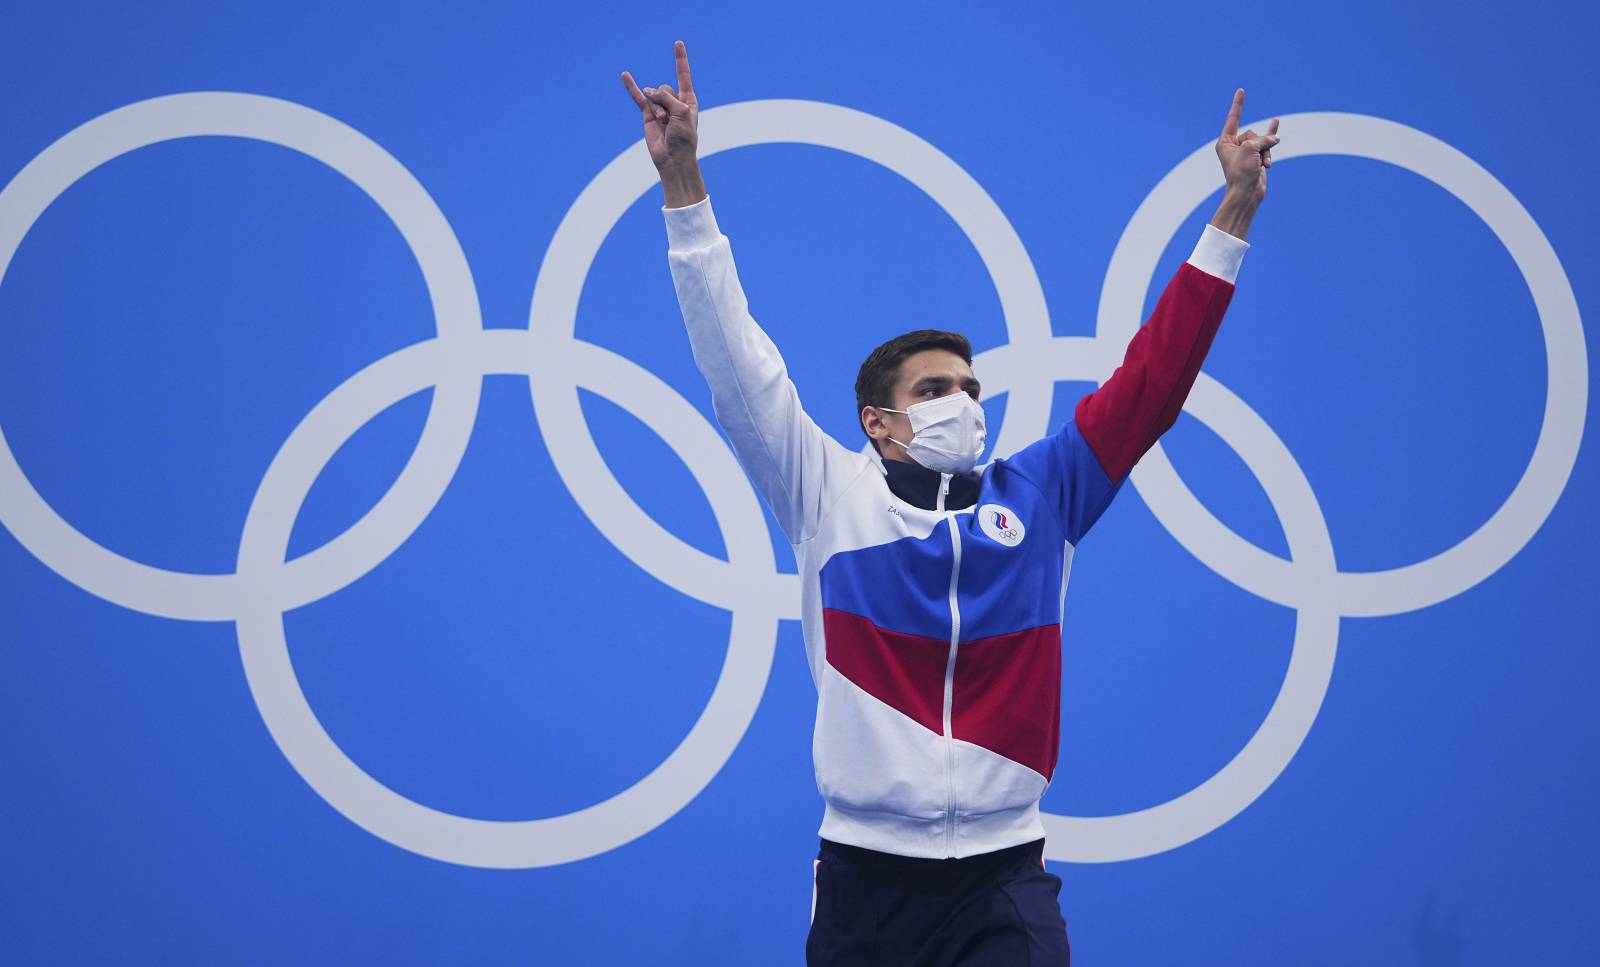 Россия может выиграть 6 медалей в восьмой день Олимпиады 30 июля: Где их ждать и сколько будет золотых